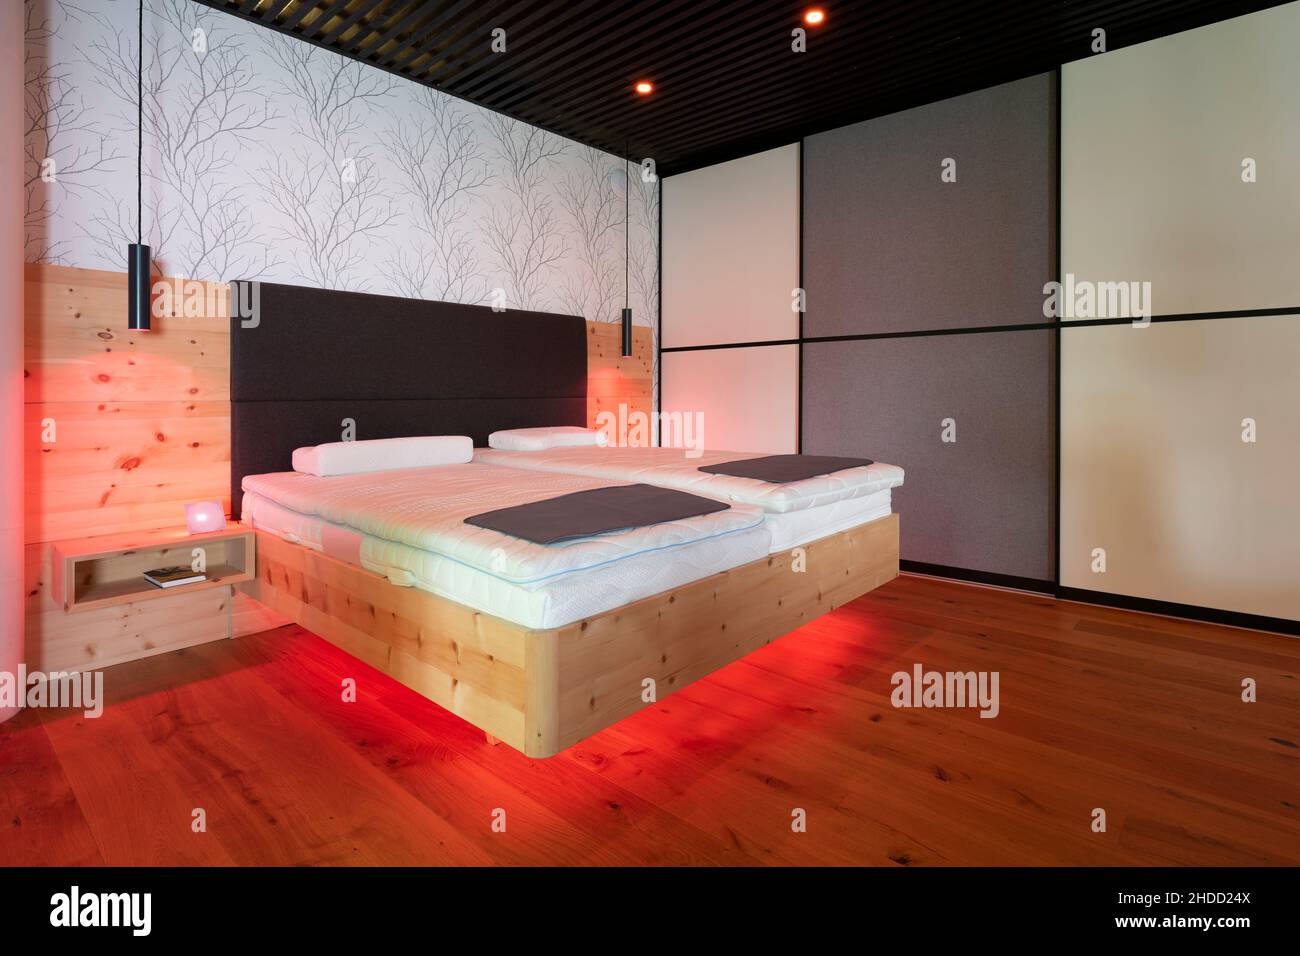 moderna cama de pino de piedra con iluminación led, lámparas colgantes y techo con listones negros Foto de stock